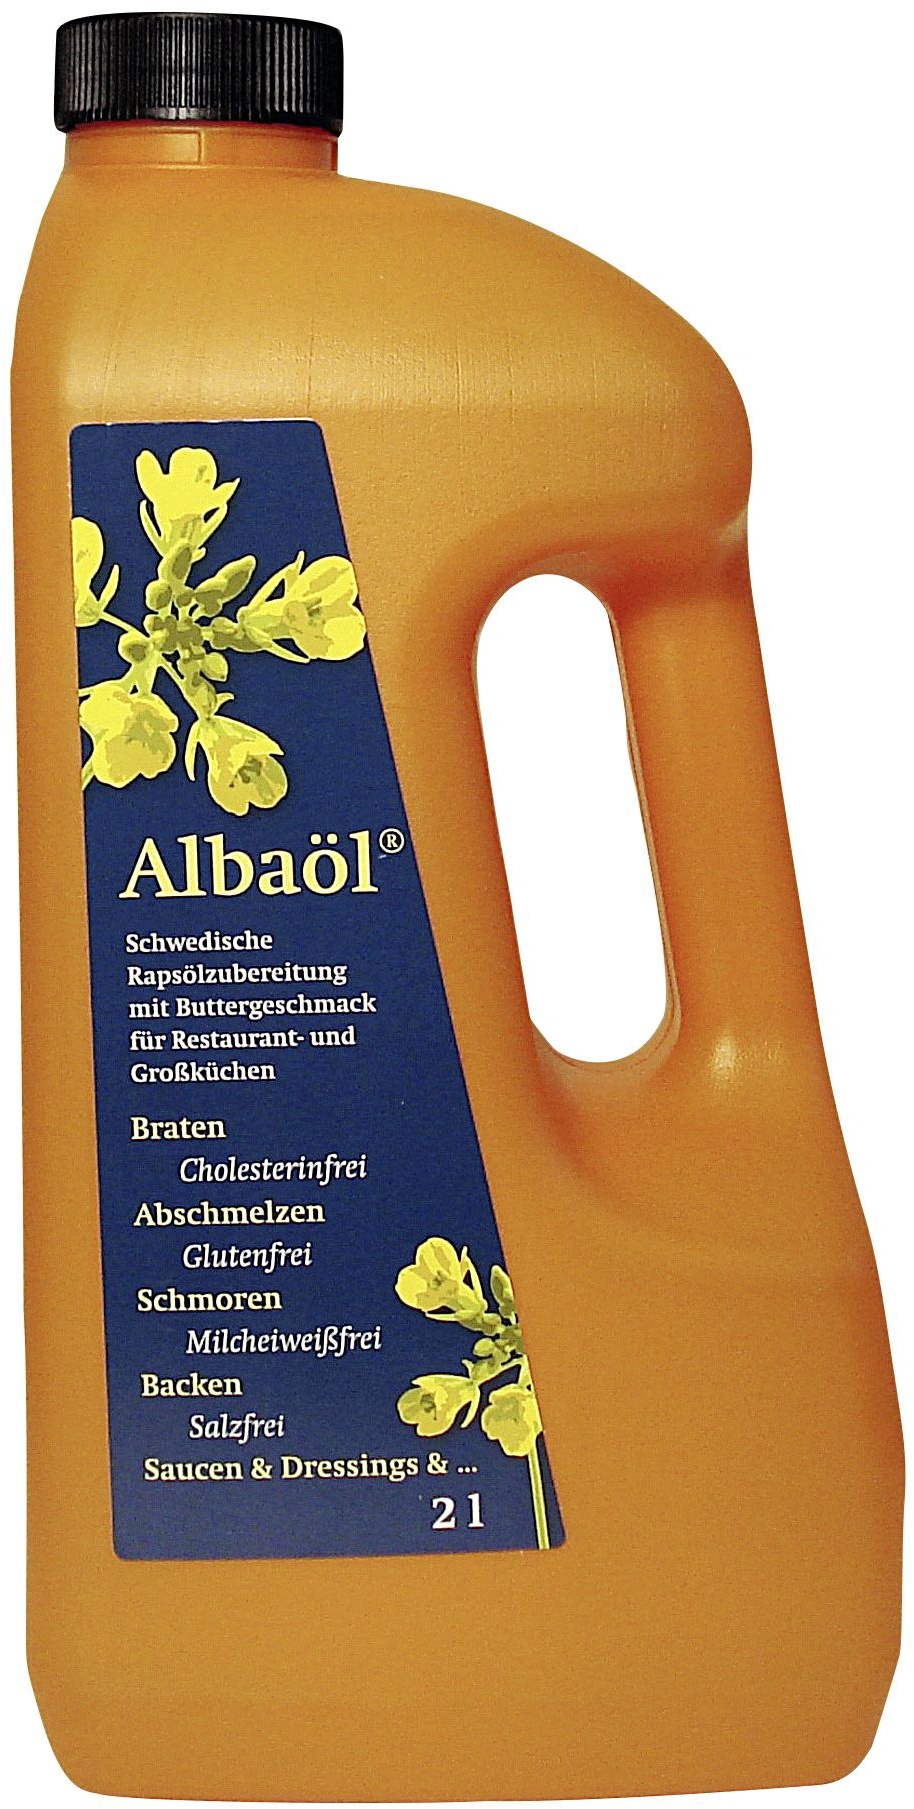 Albaöl Schwedische Rapsöl-Zubereitung Mit Buttergeschmack (2 l)